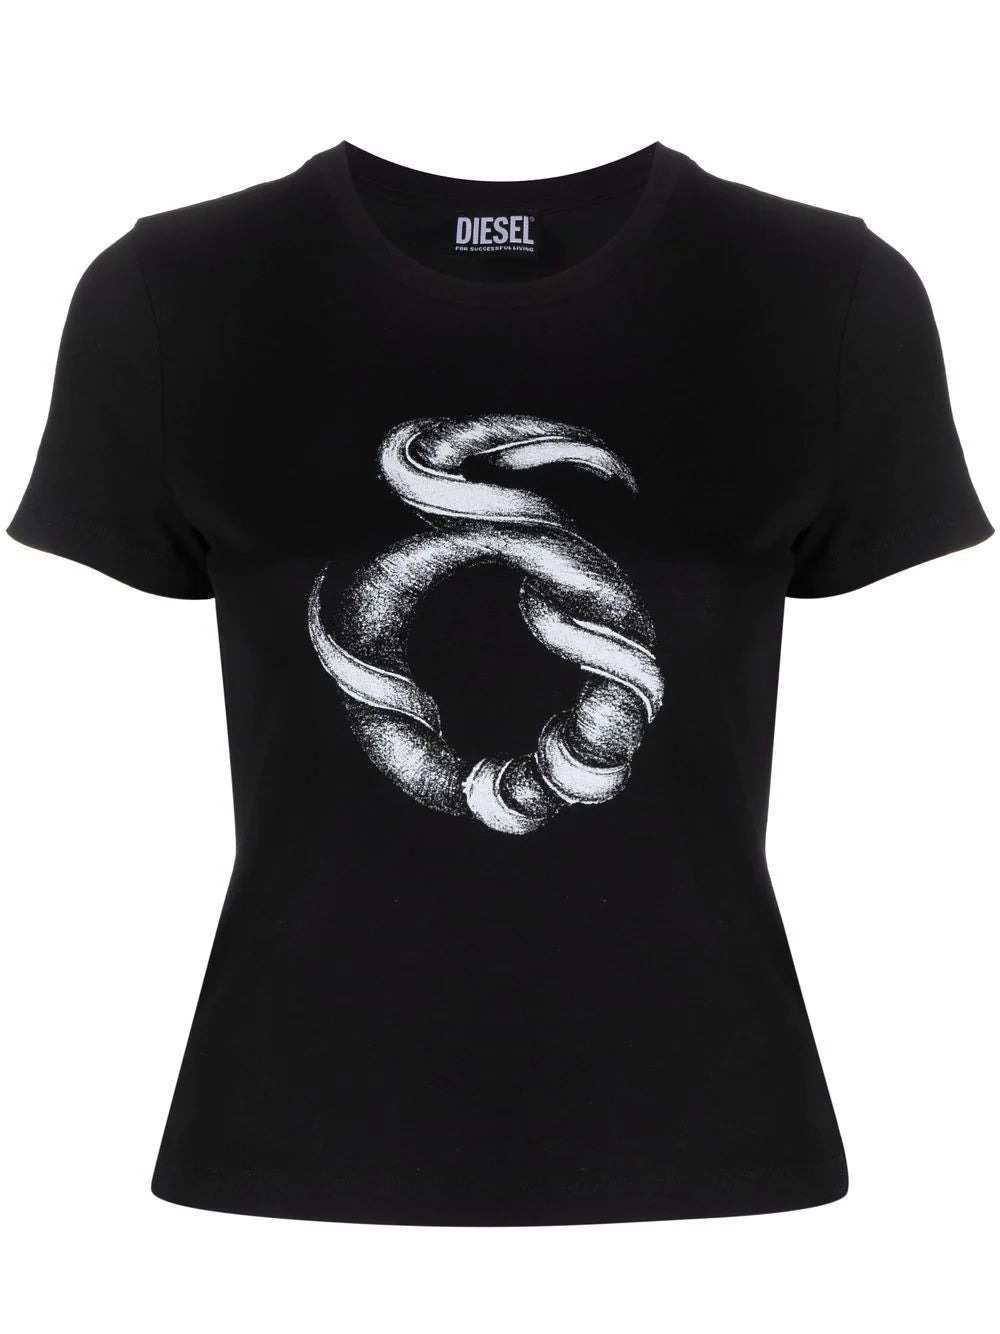 Diesel Black Graphic T-Shirt